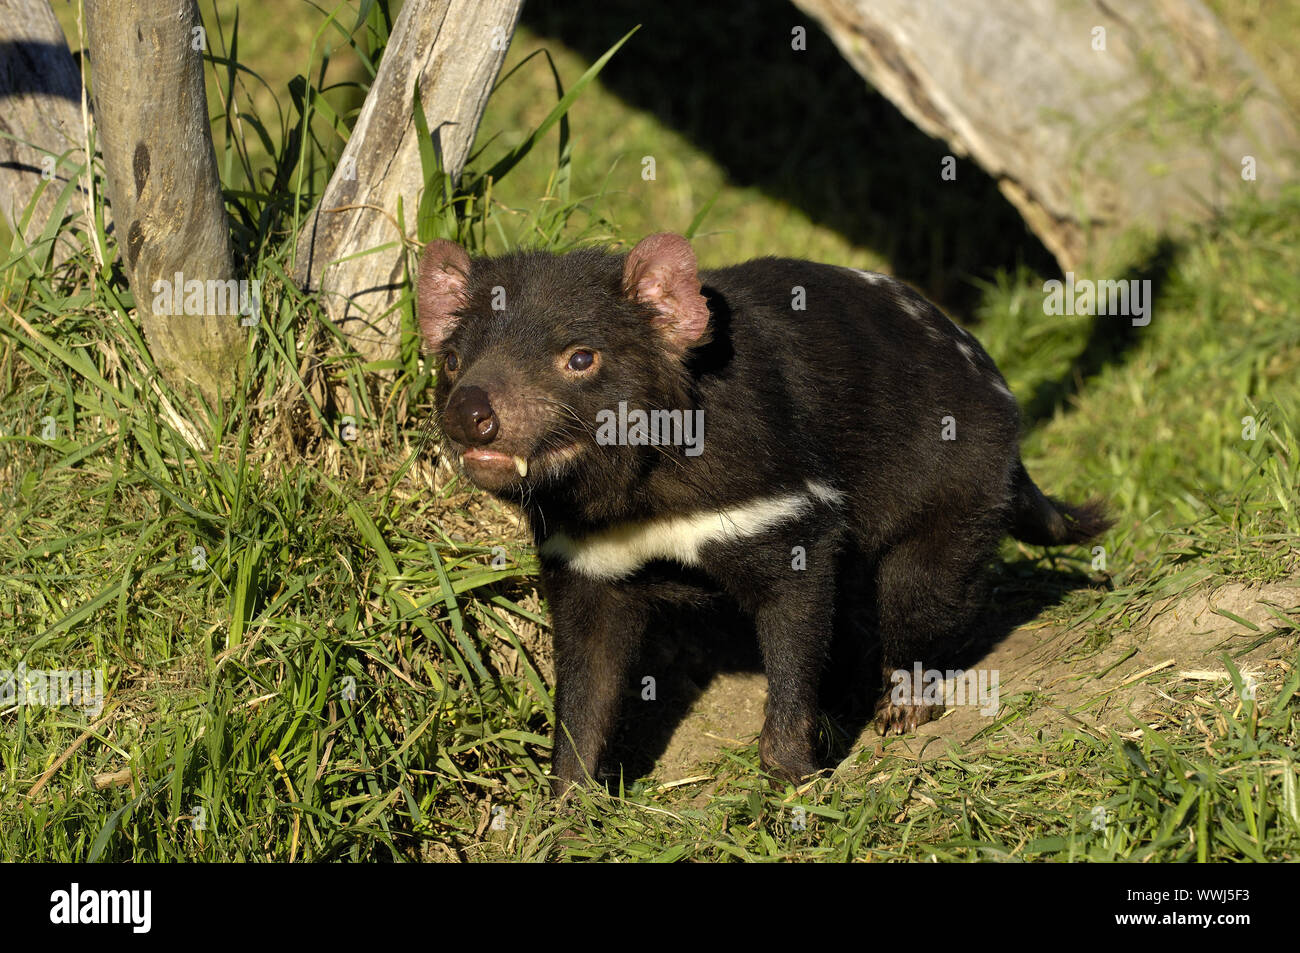 Tasmanian devil, Sarcophilus harrisii, Tasmania Stock Photo